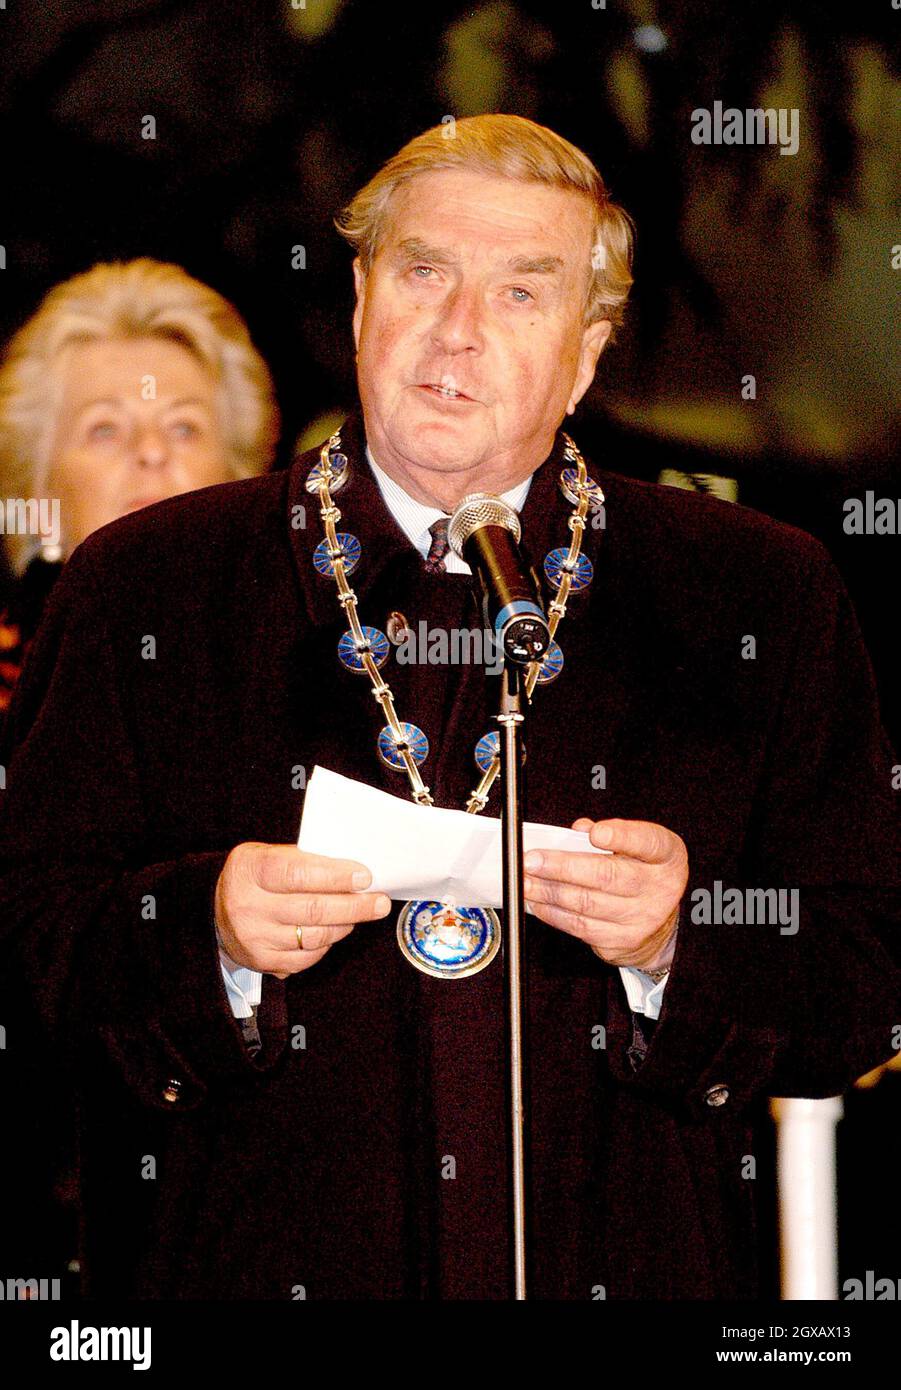 Le 2004 luci dell'albero di Natale sono accese a Trafalgar Square, Londra il 30.11.04 dal sindaco di Oslo, MR. Per Ditlev-Simonsen. Il Signore Sindaco di Westminster, Catherine Longworth, e il Signore Sindaco di Westminster, ha partecipato all'evento il Sig. Tarald Brautaset. Foto Stock